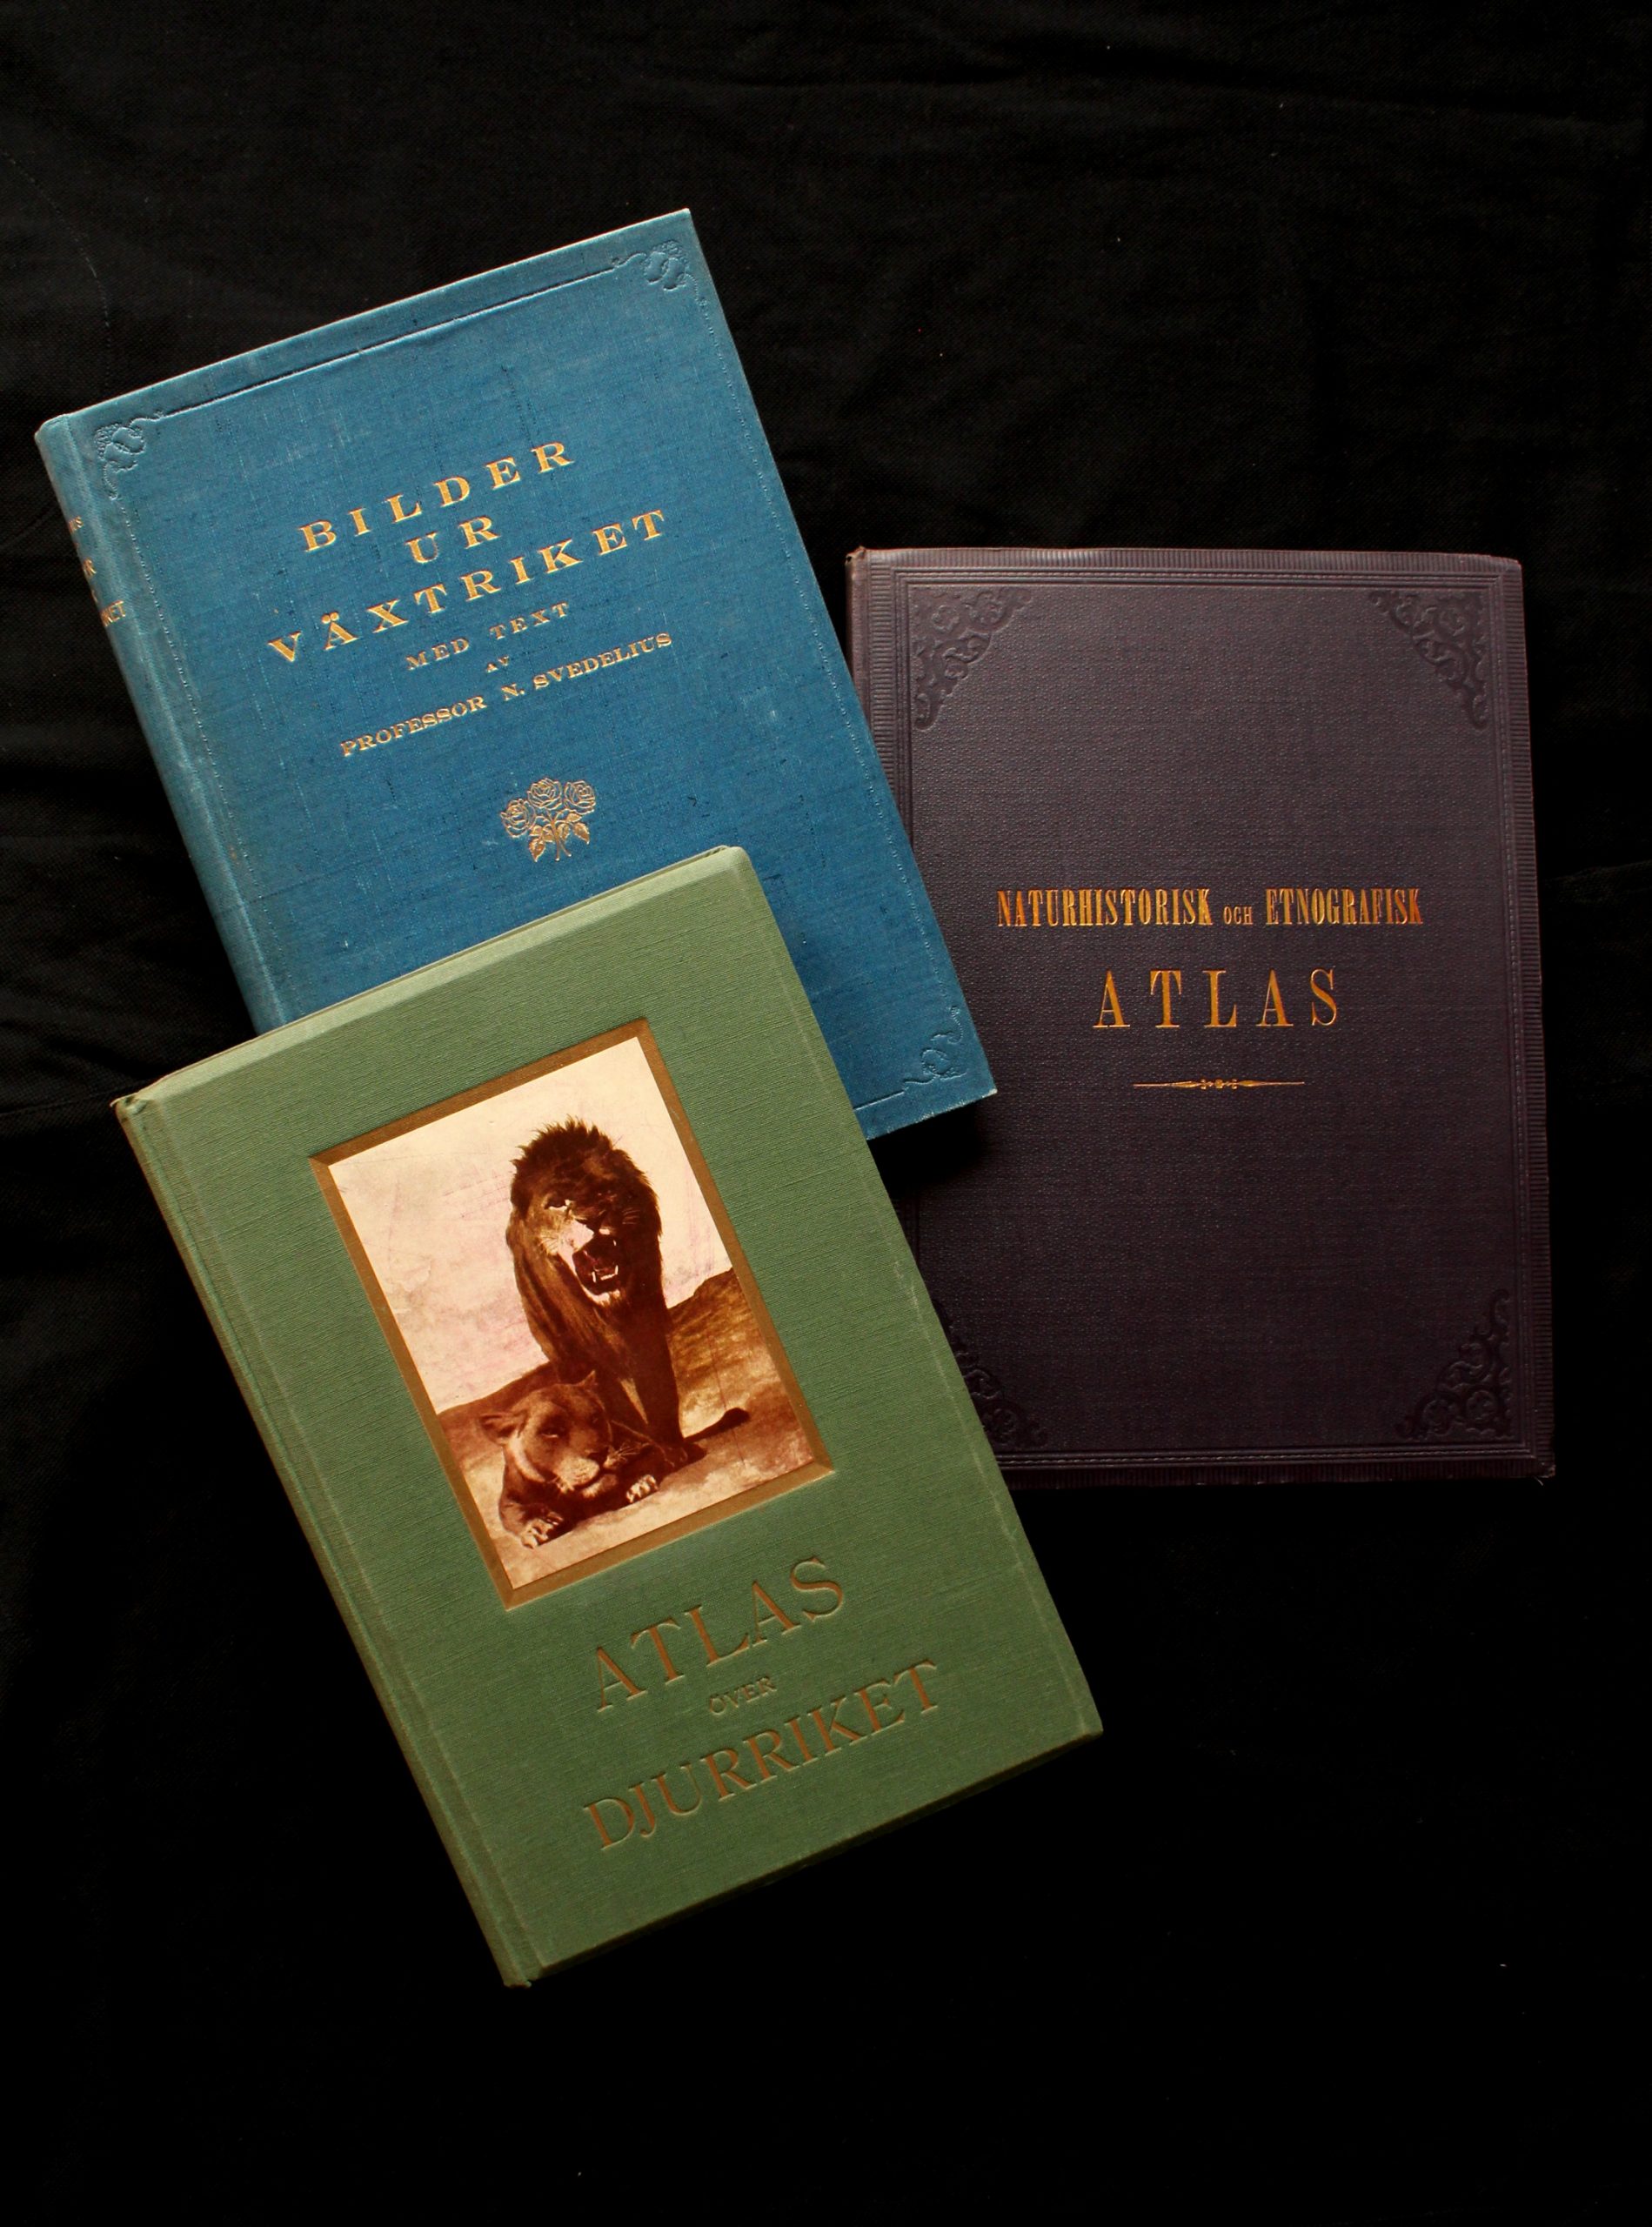 3. Atlas över djurriket (1913), Bilder ur växtriket (1919), Naturhistorisk och etnografisk atlas (1881)